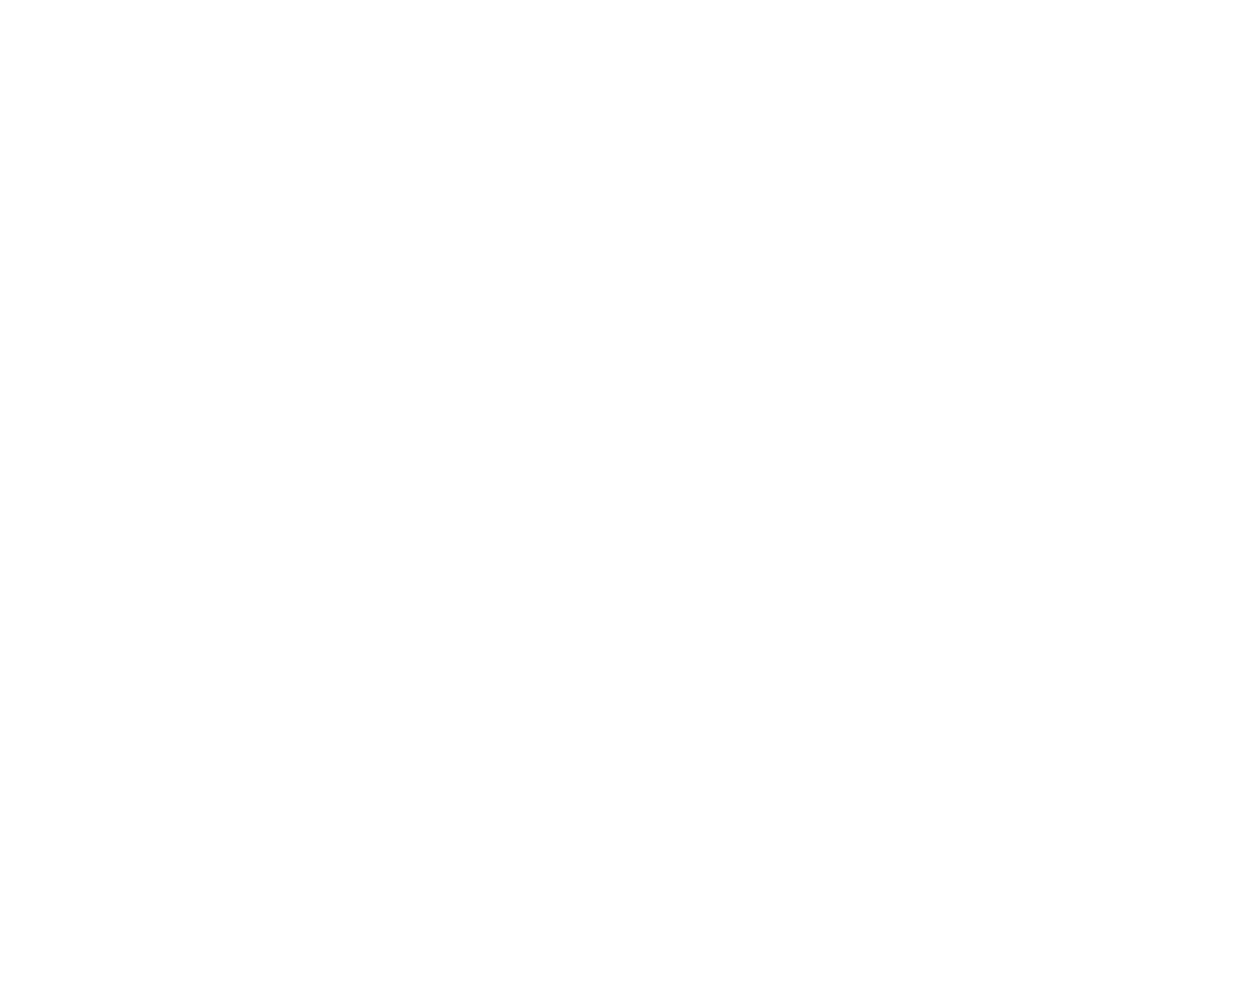 SL logotyp